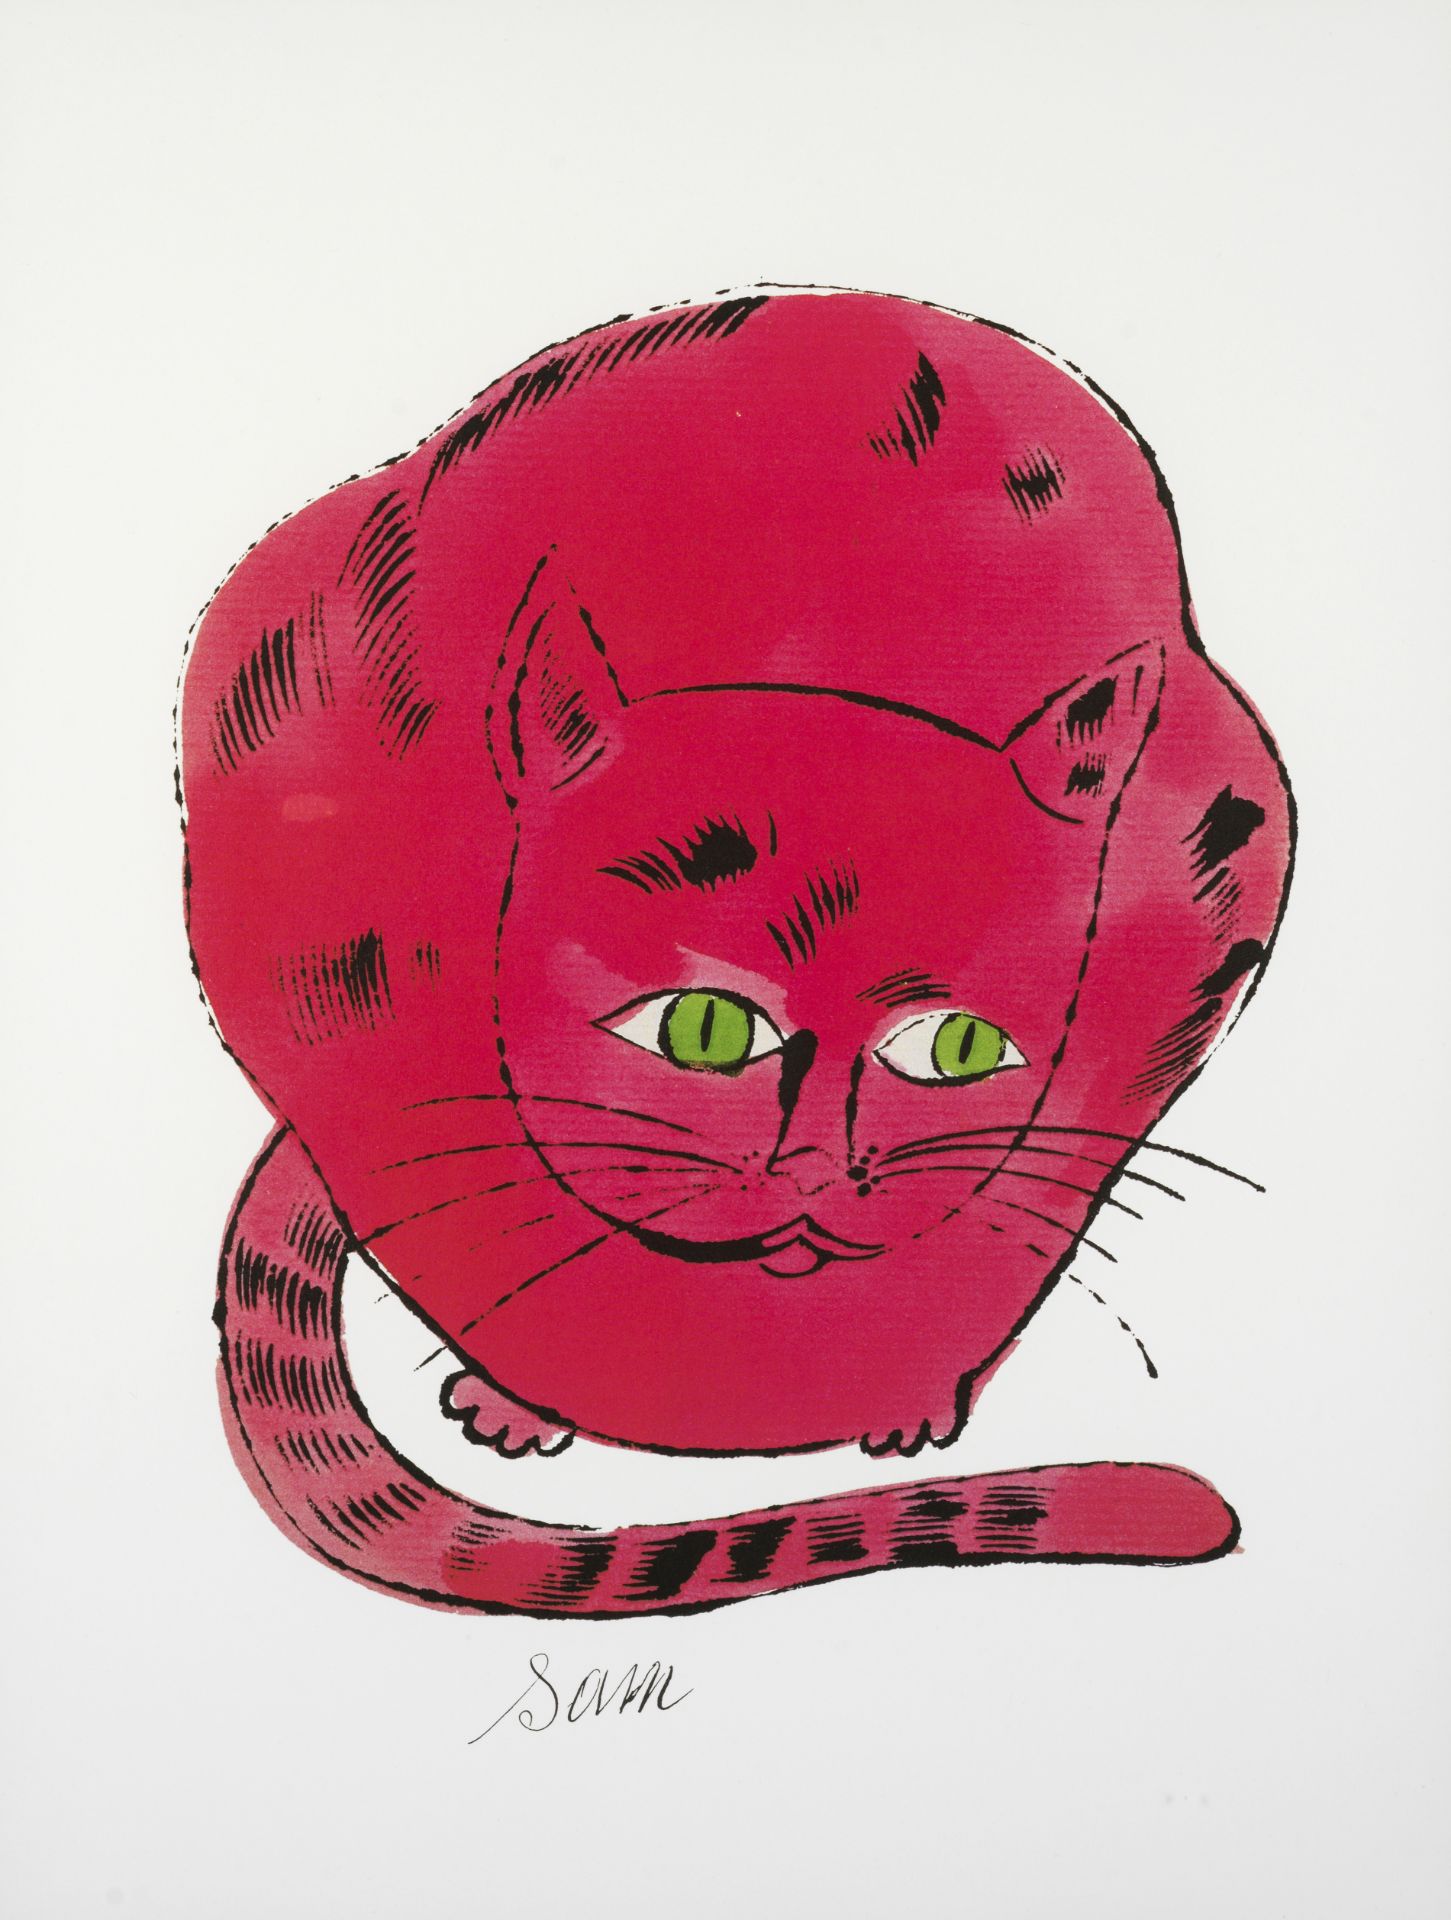 Andy WARHOL (D'après) - Sam Red cat - Offset lithographie - Tampon de la fondation [...]